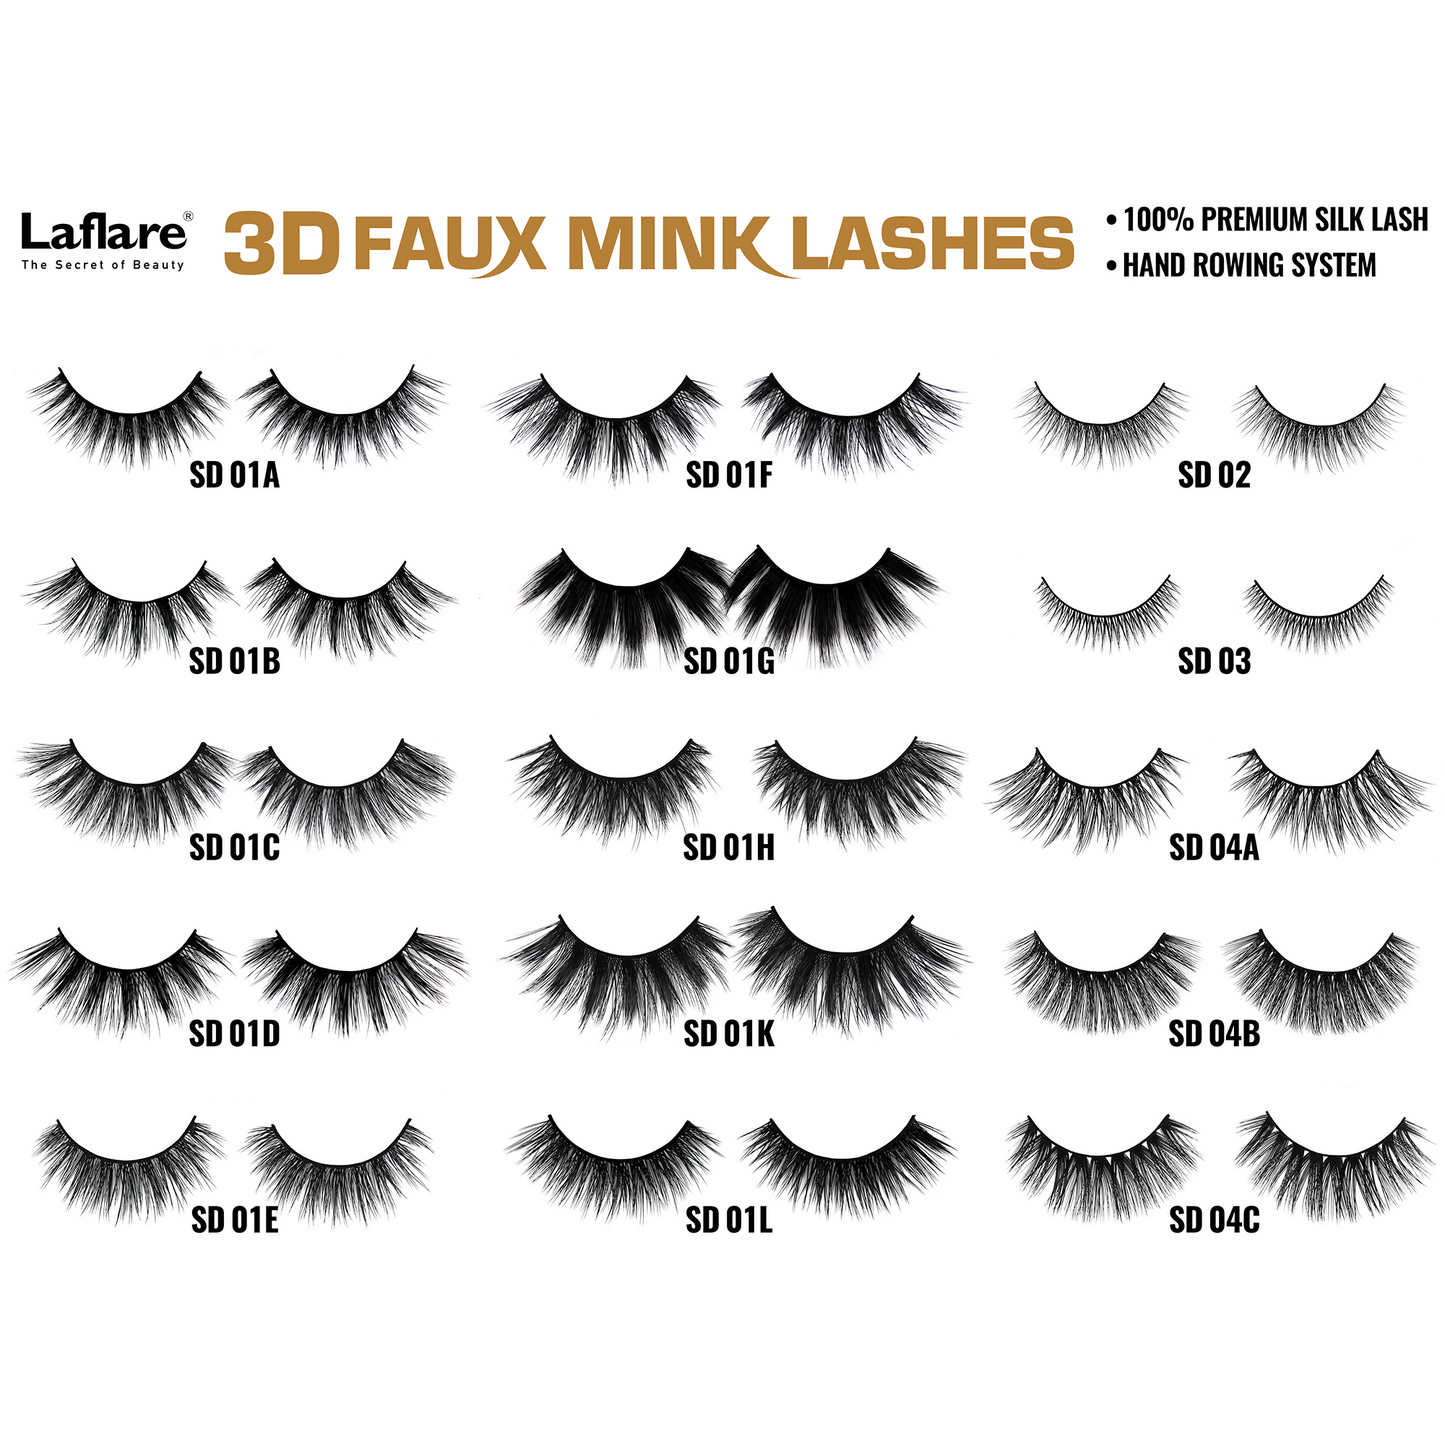 LAFLARE 3D FAUX MINK LASHES - SD01A